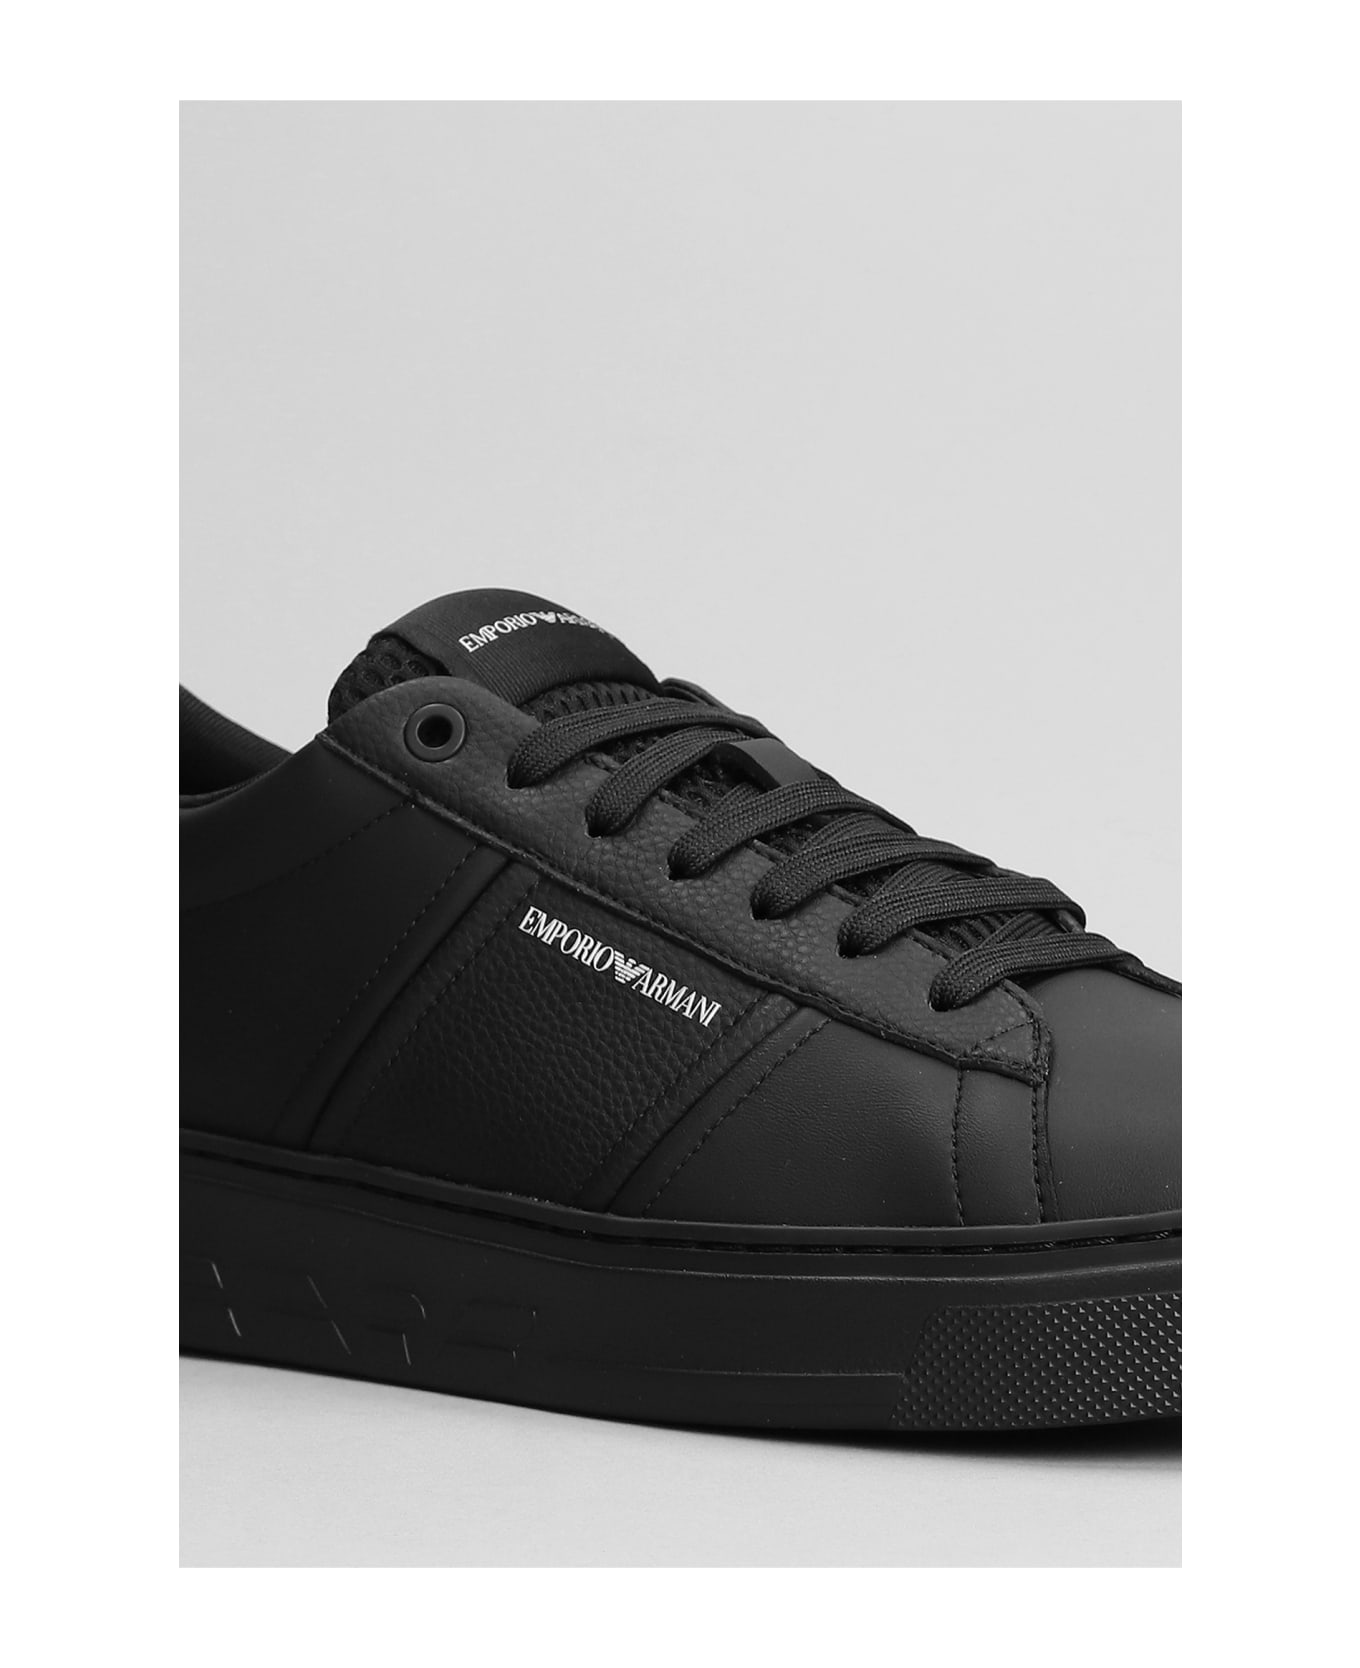 Emporio Armani Sneakers In Black Leather - Black